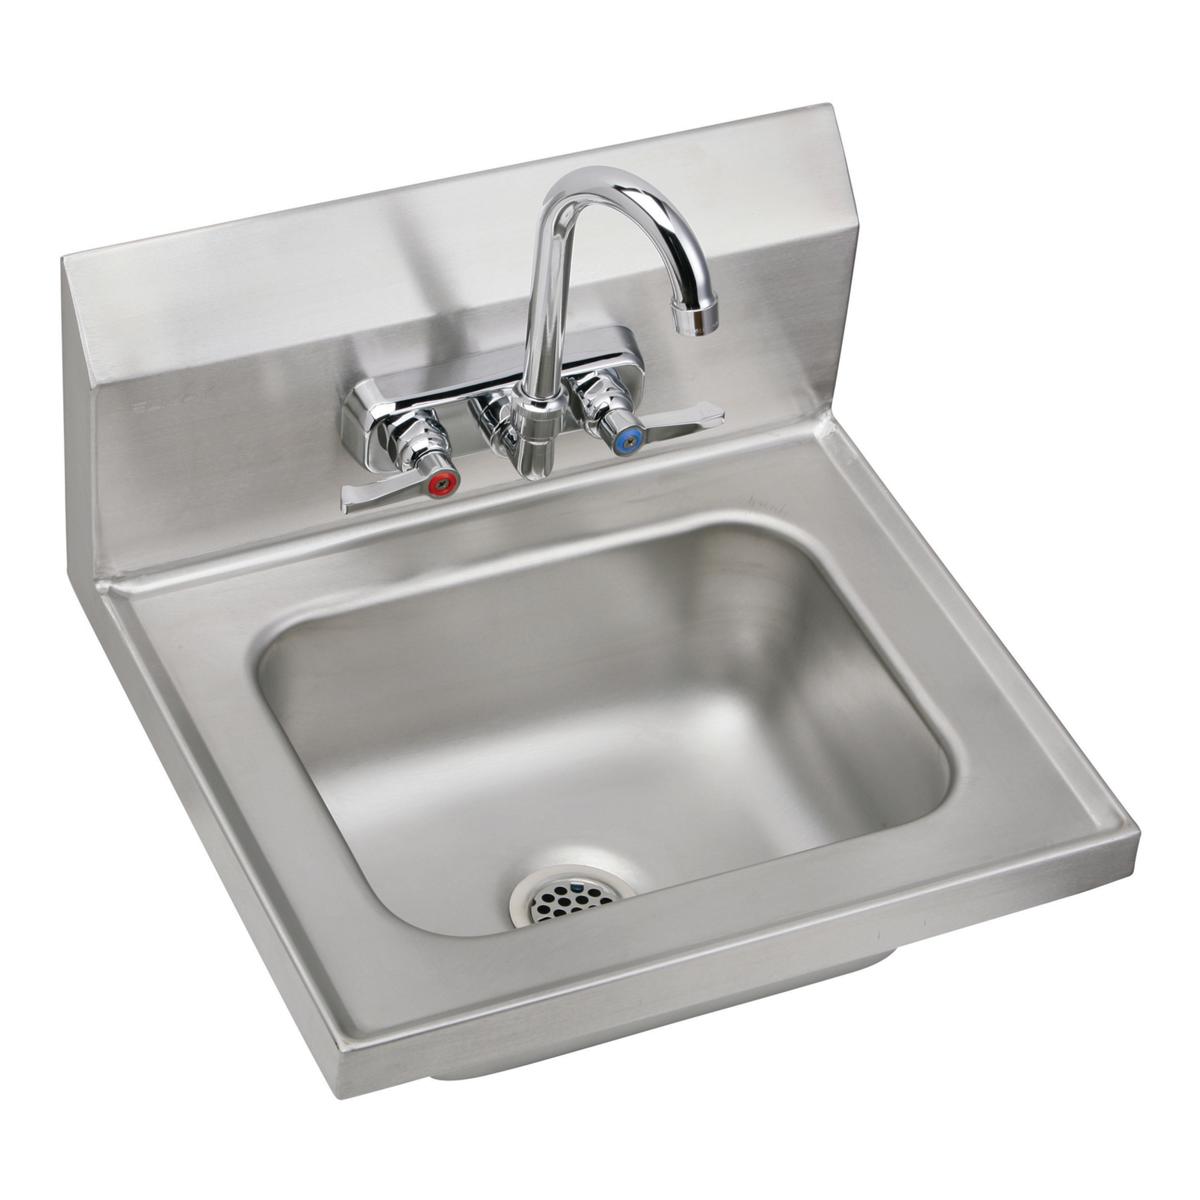 Elkay Stainless Steel Single Bowl Sink 1210394